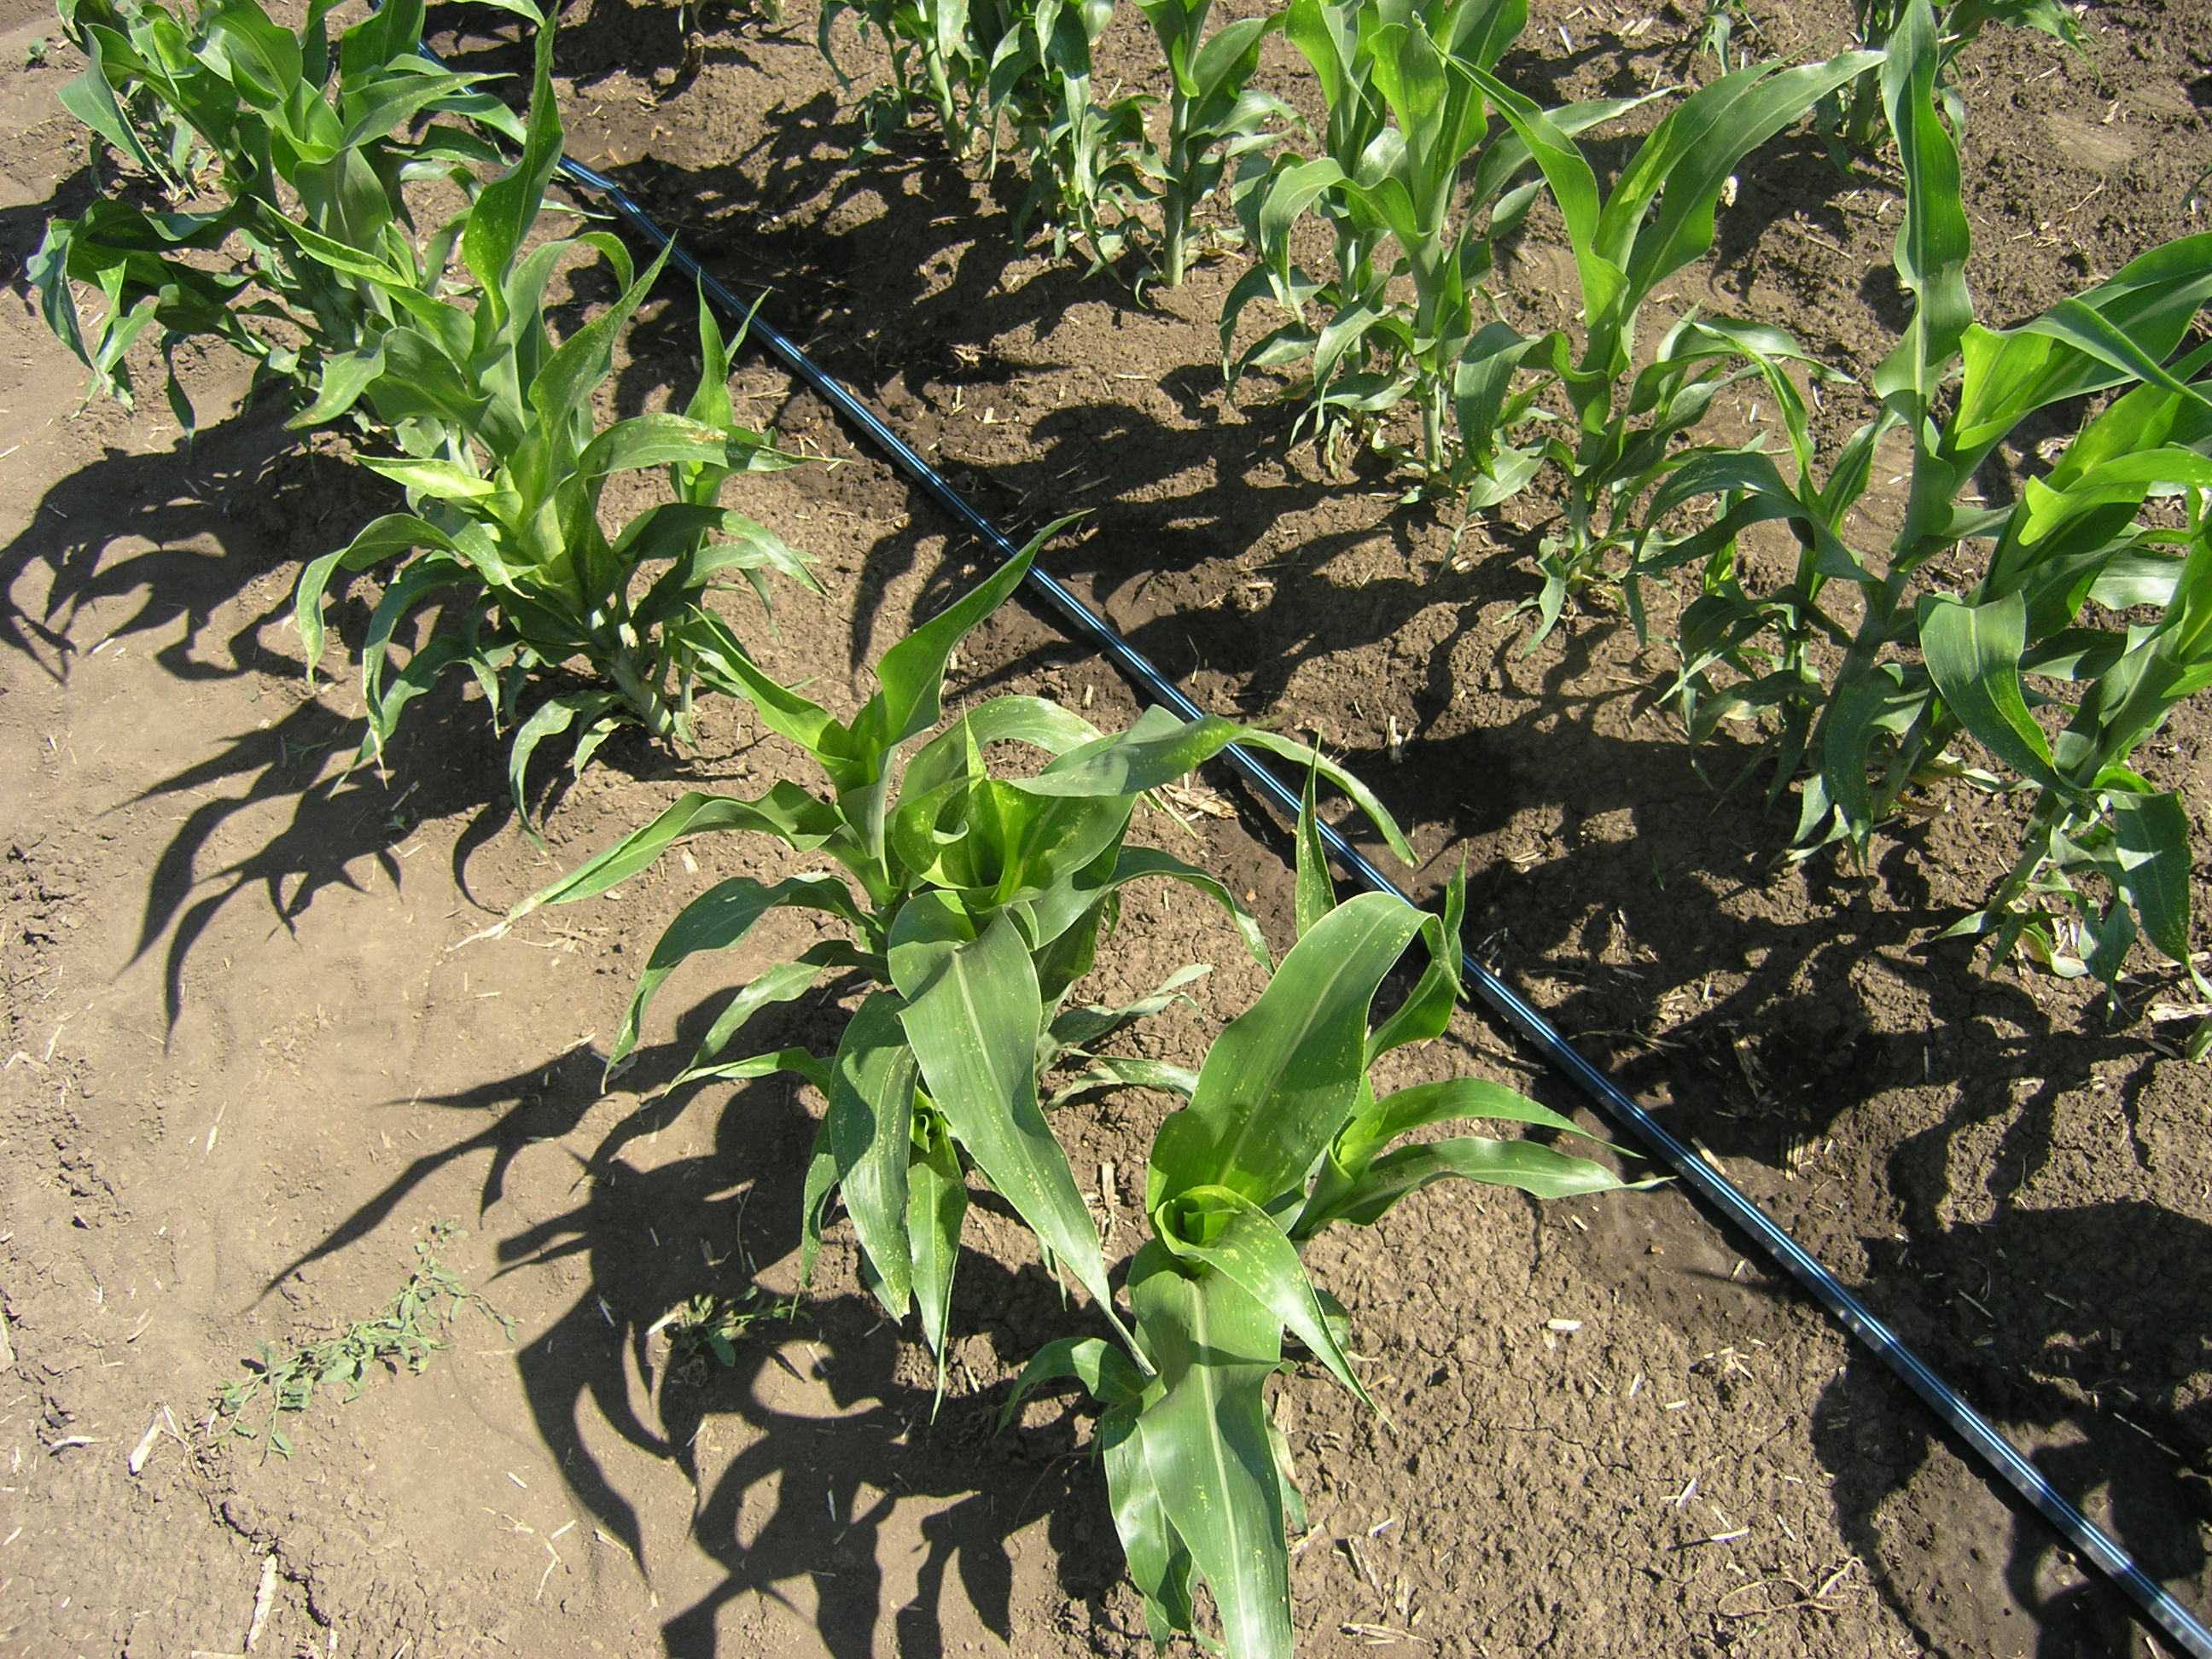 Посадка кукурузы весной: посев, когда сеять, как сажать правильно?